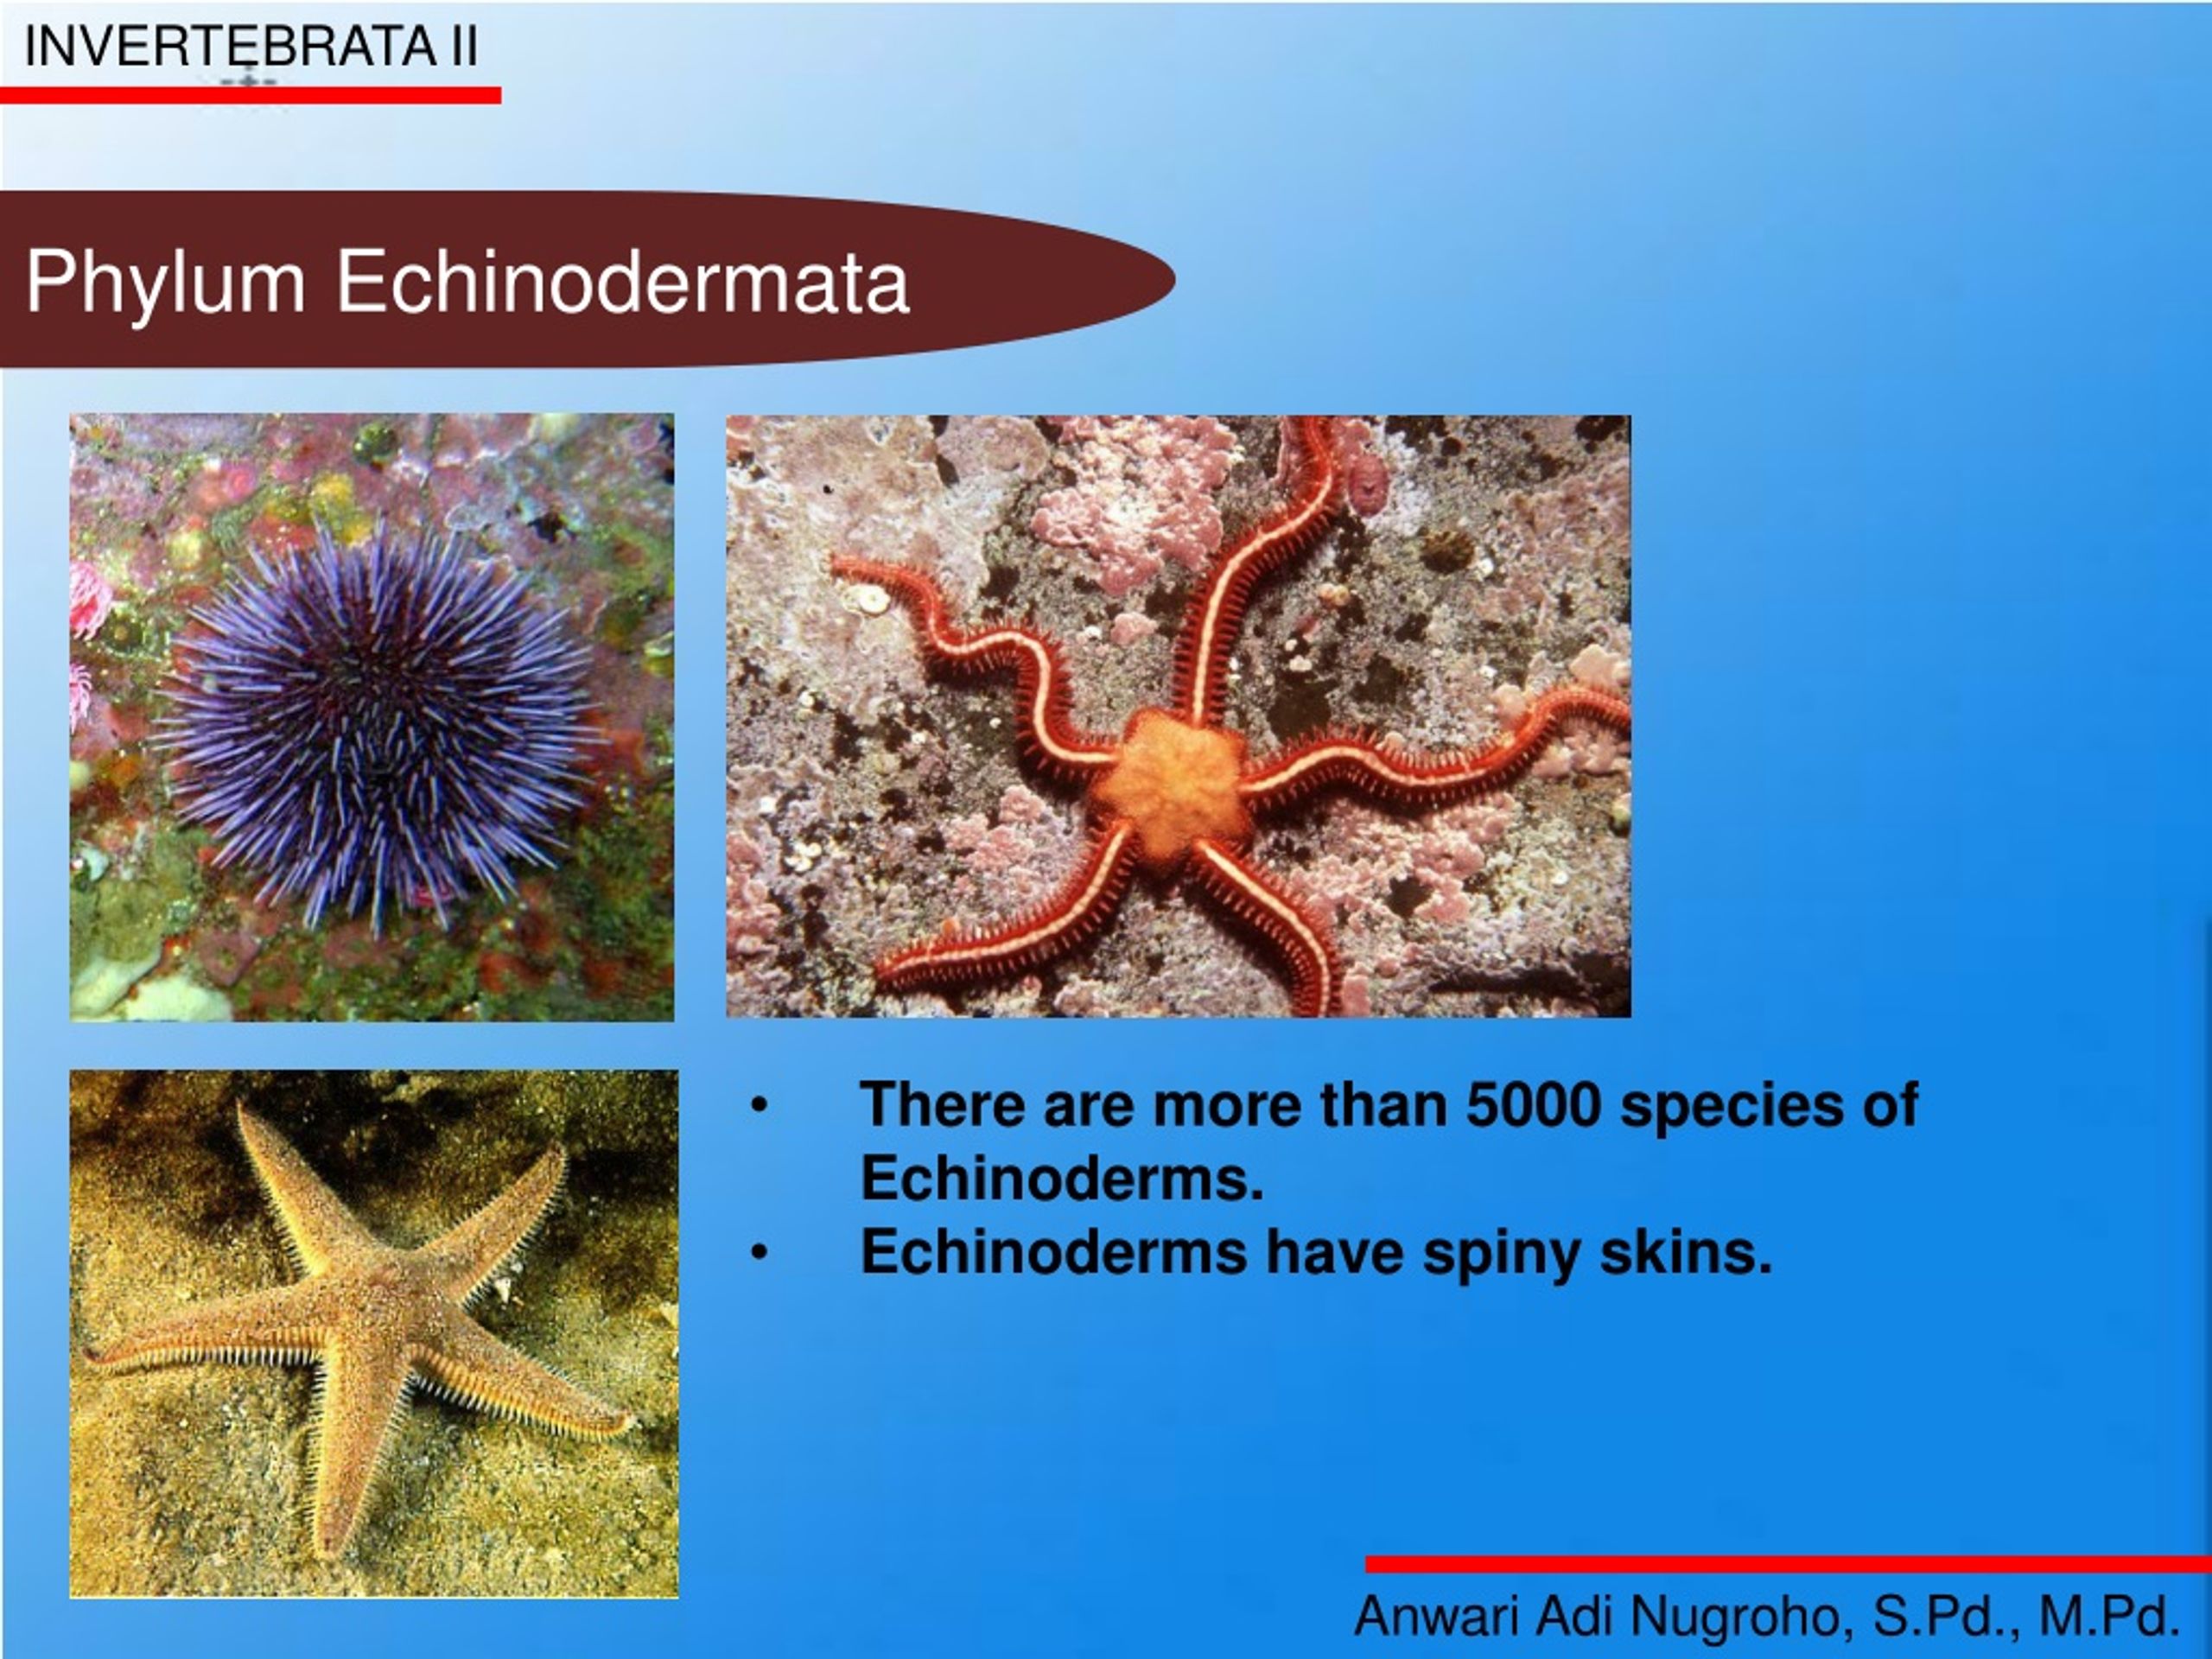 examples of phylum echinodermata